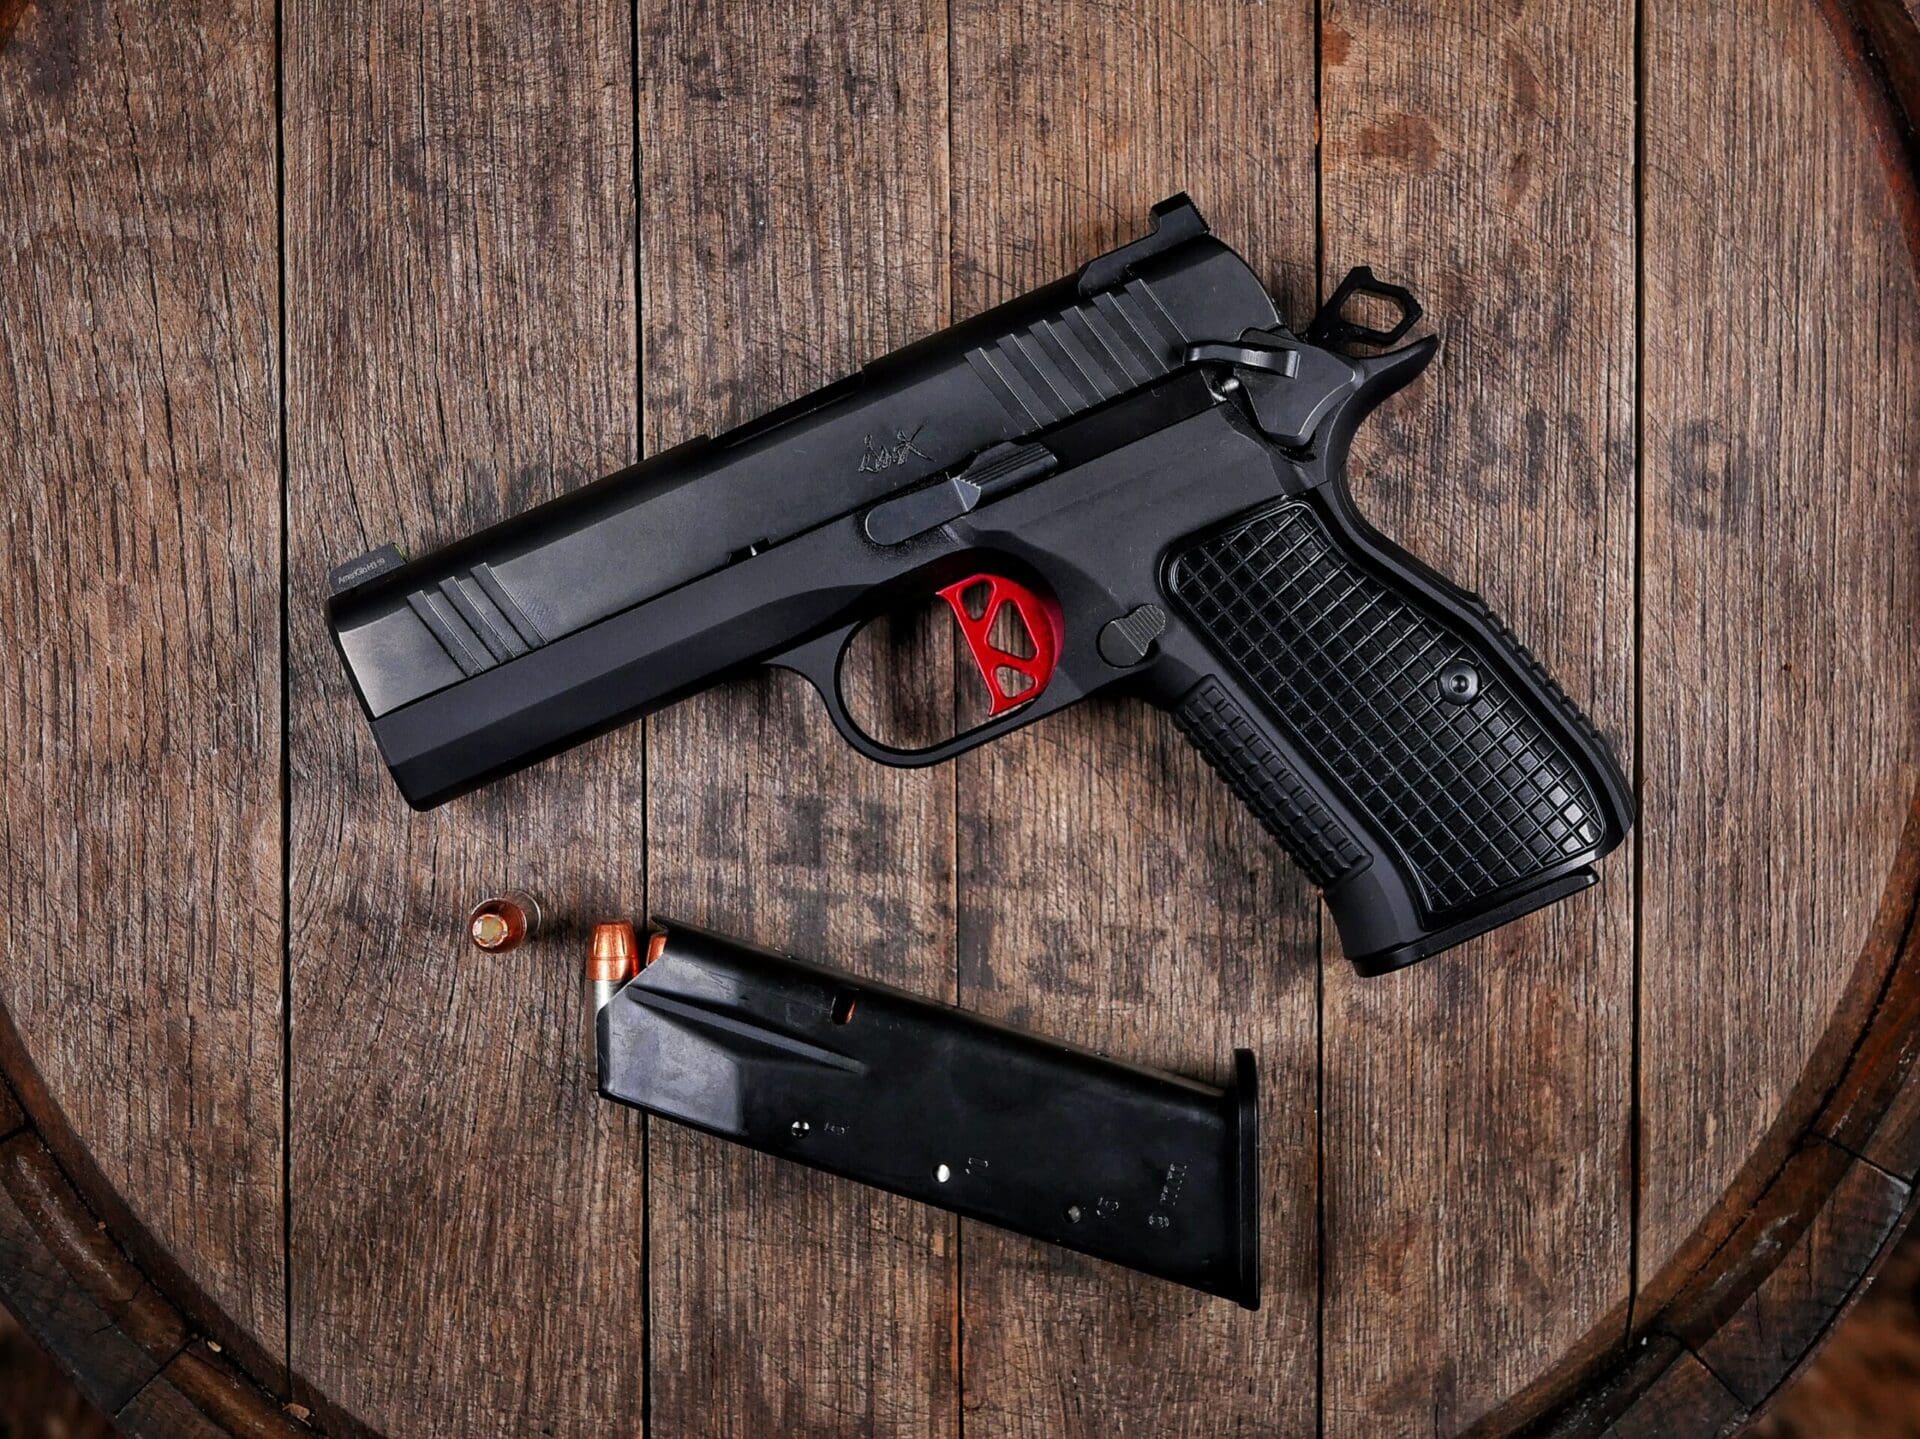 Dan Wesson DWX Compact 9mm pistol